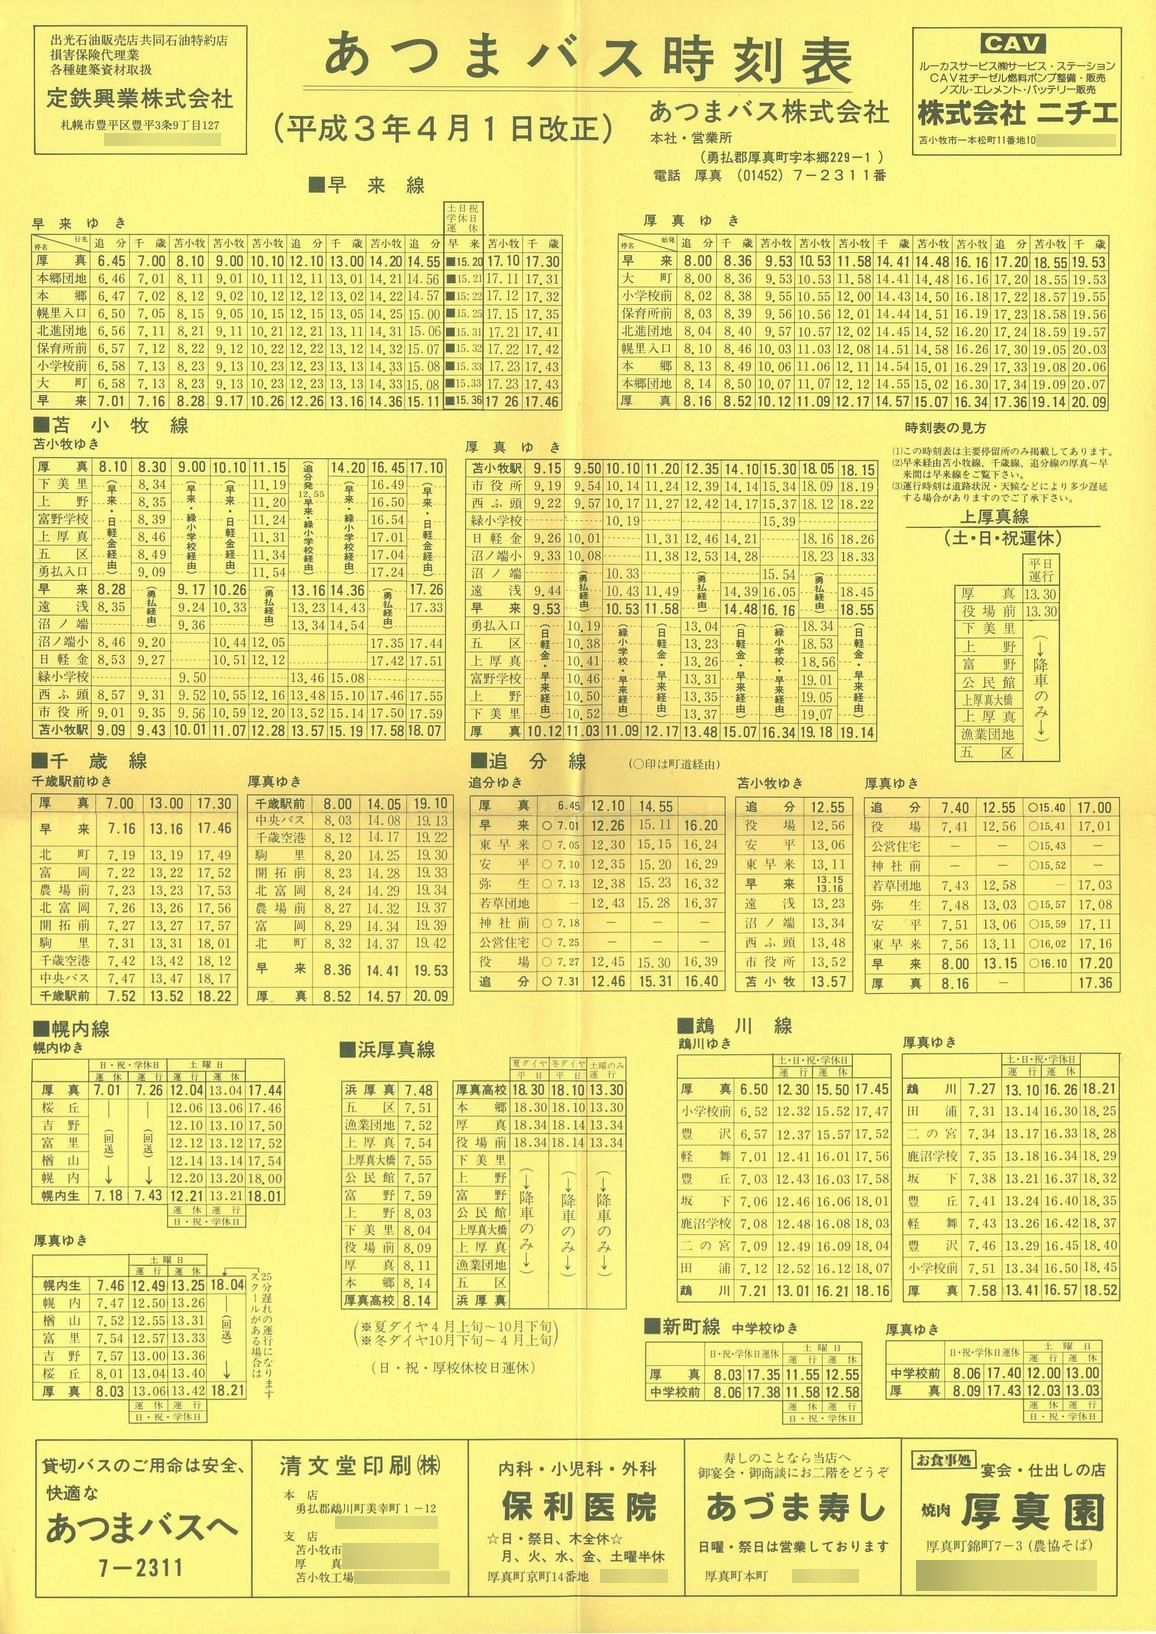 1991-04-01改正_あつまバス_時刻表